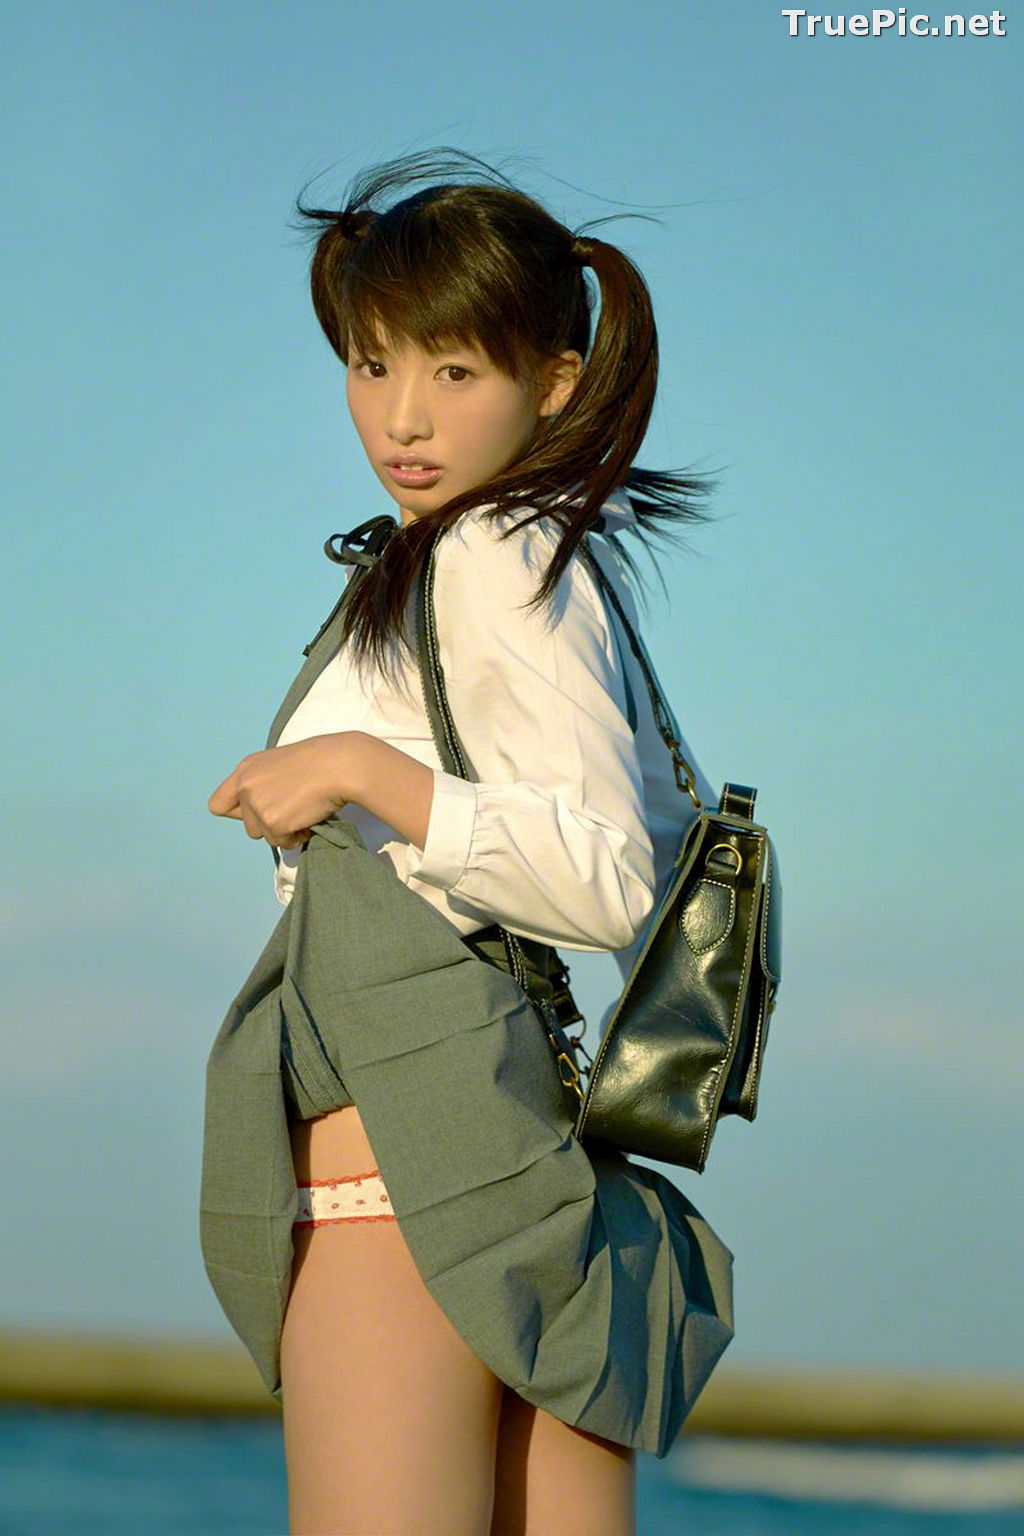 Image Wanibooks No.133 - Japanese Model and Singer - Hikari Shiina - TruePic.net - Picture-16